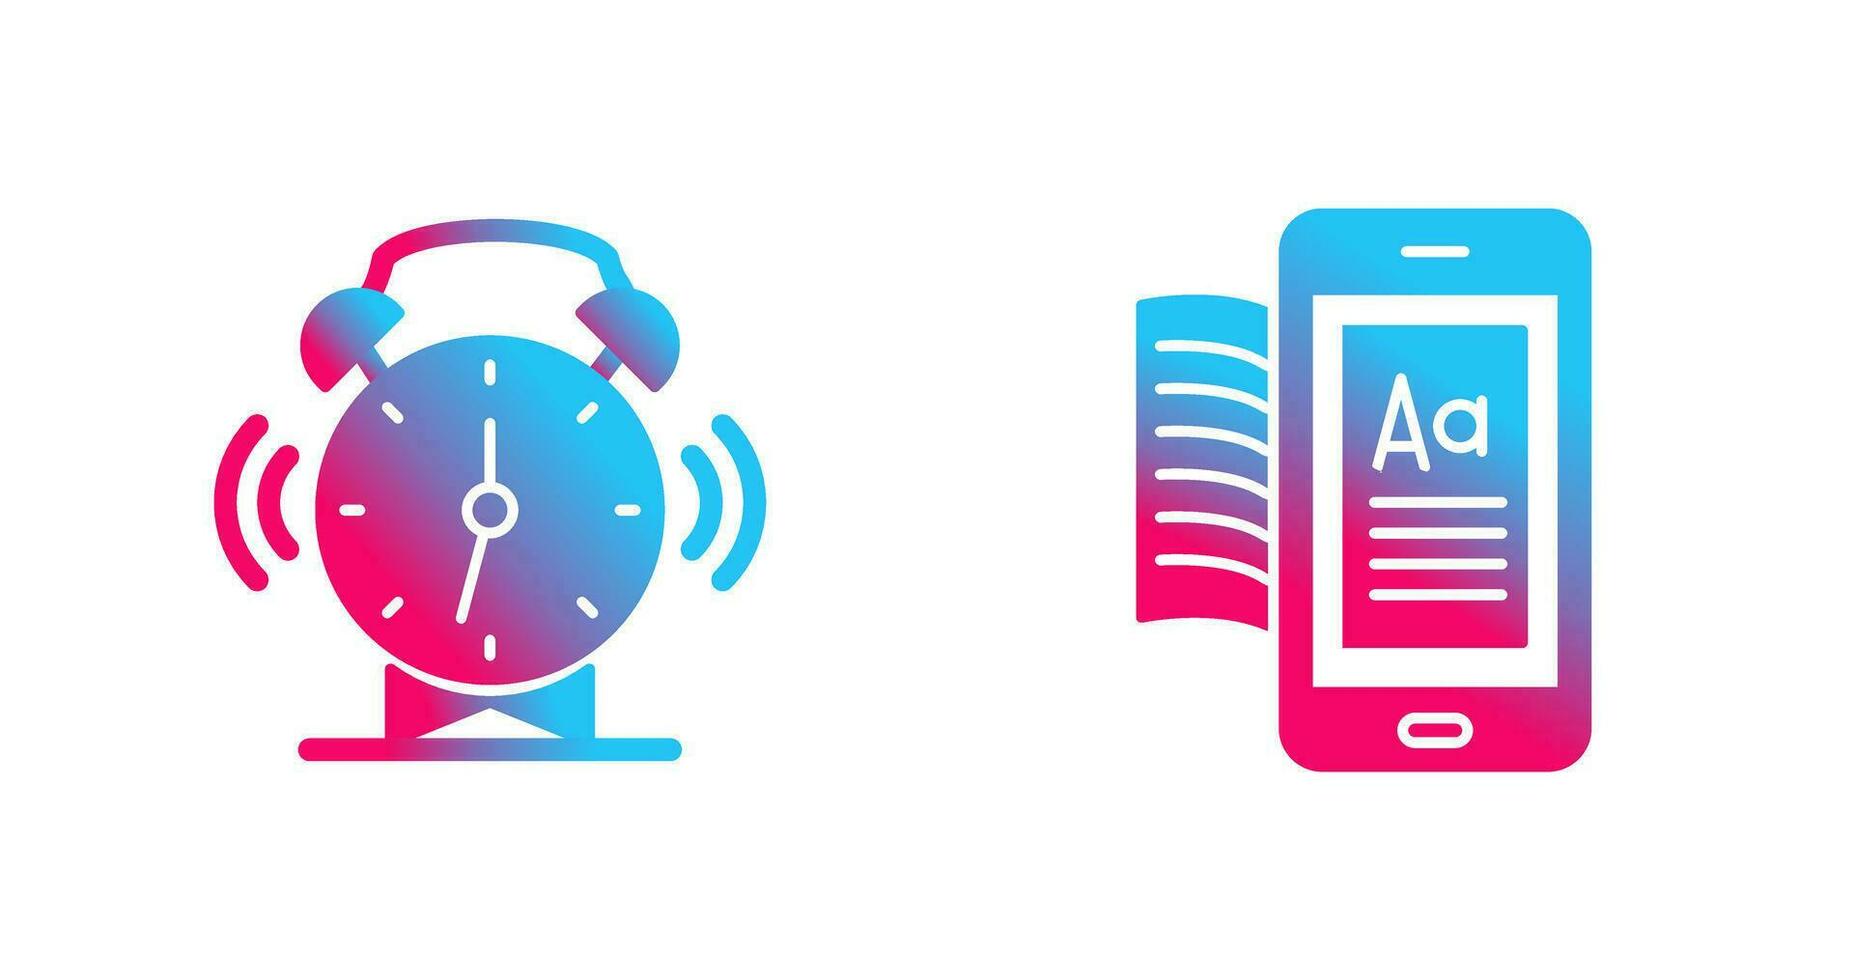 Alarm Clock and Ebook Icon vector